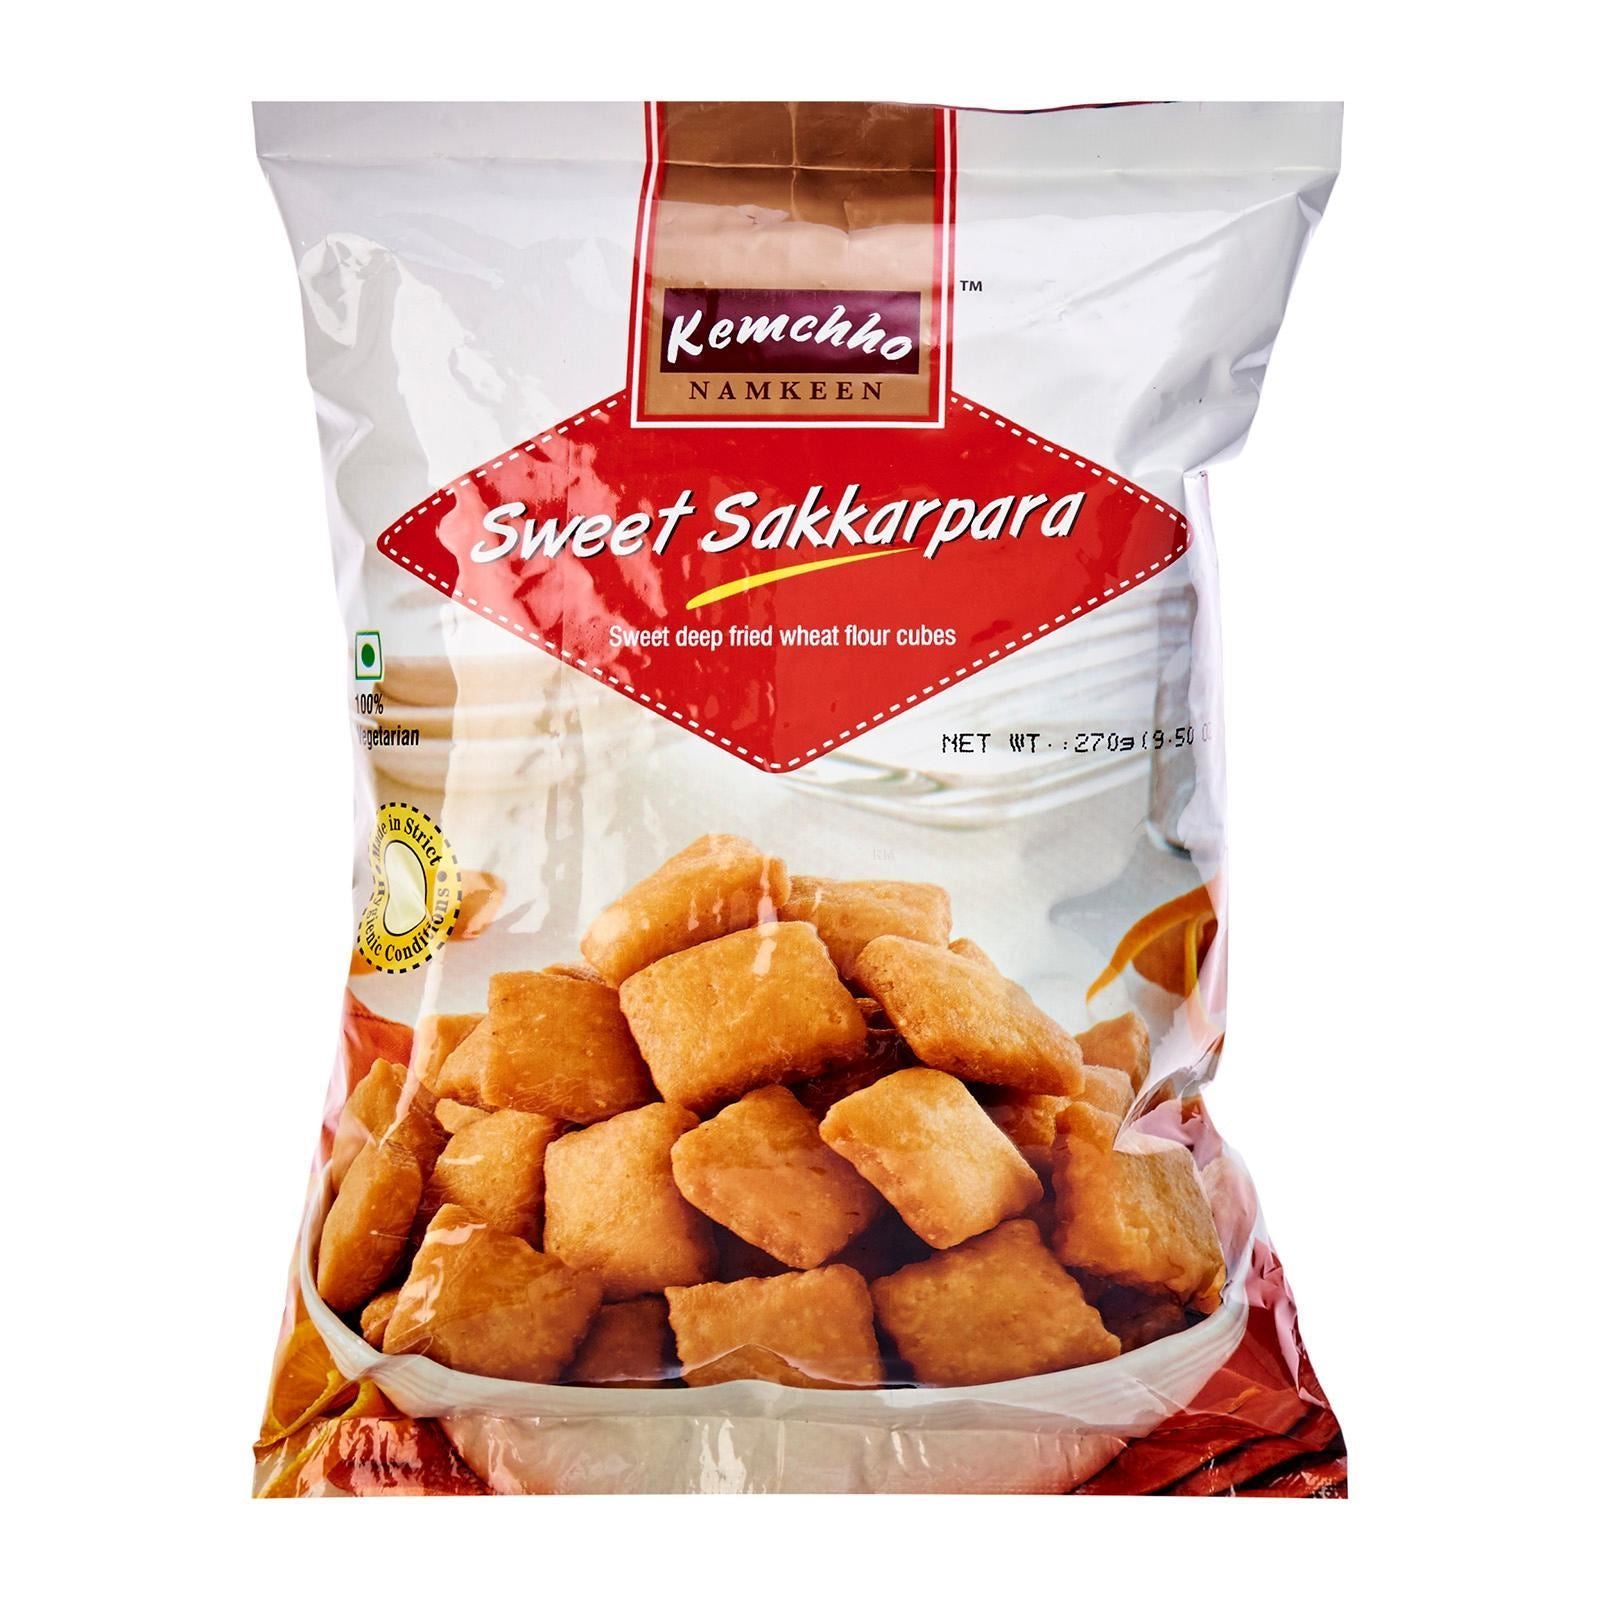 KEMCHHO Sweet Sakkarpara